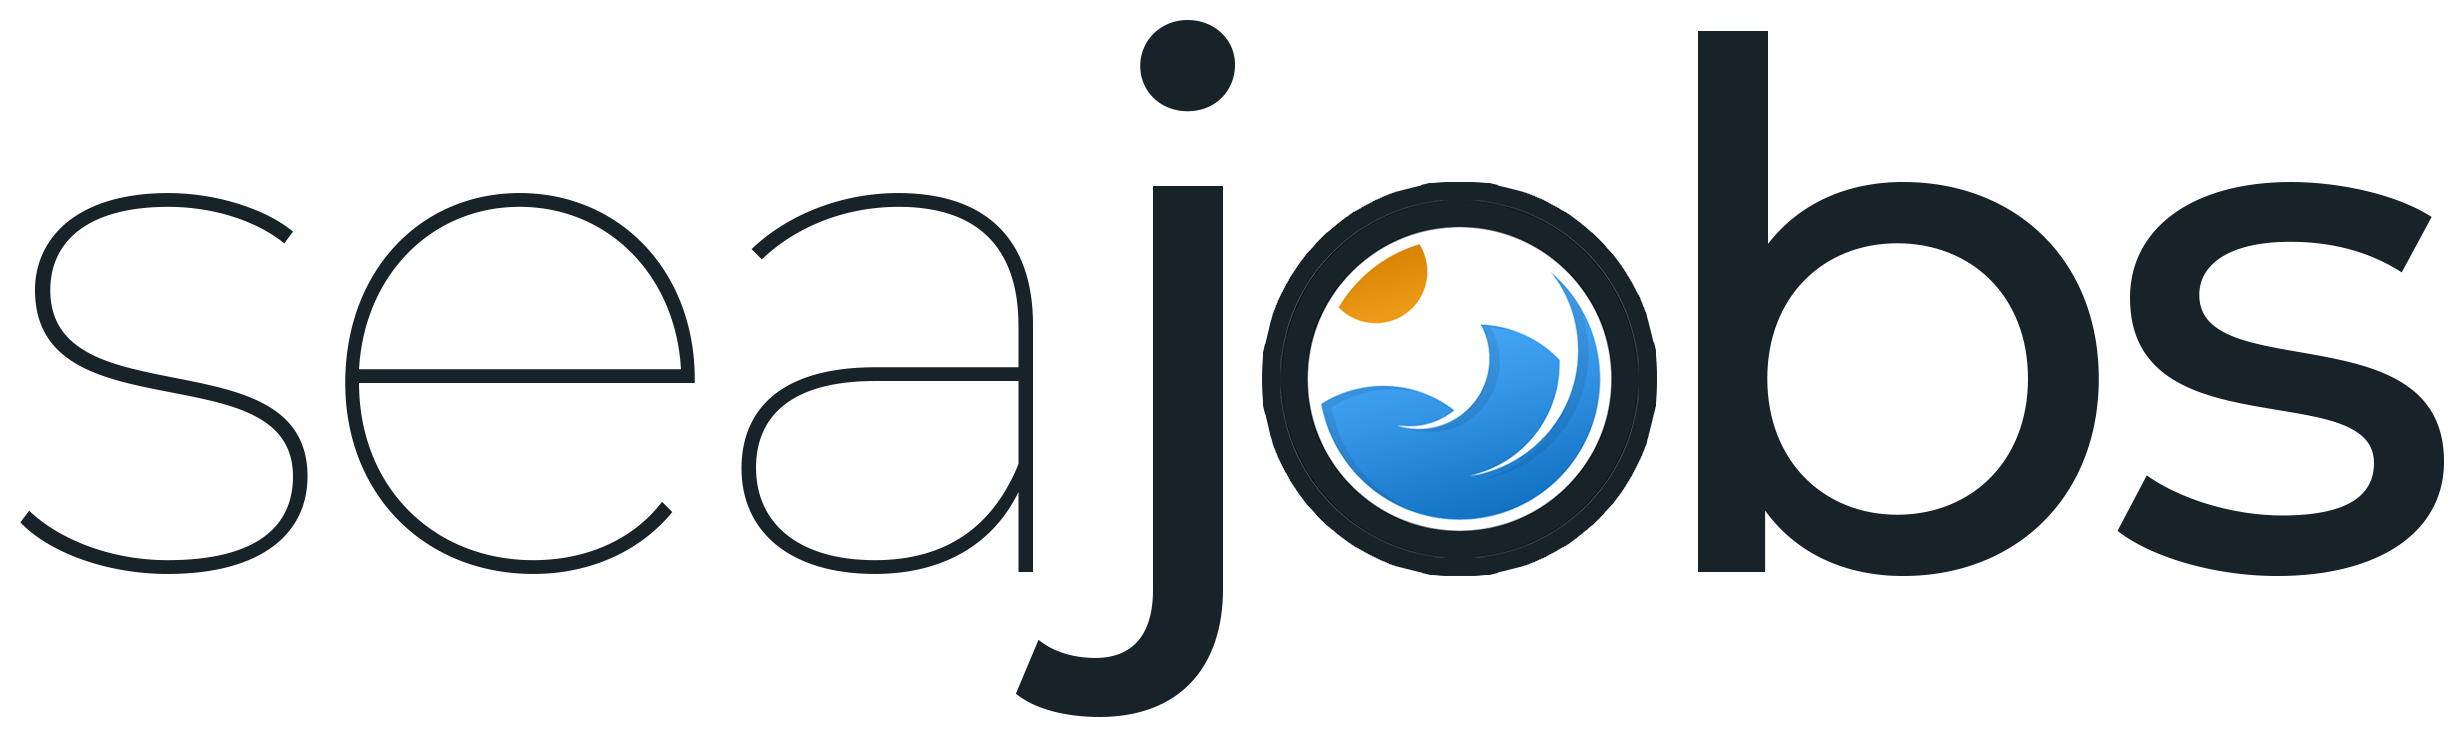 Logo de Seajobs